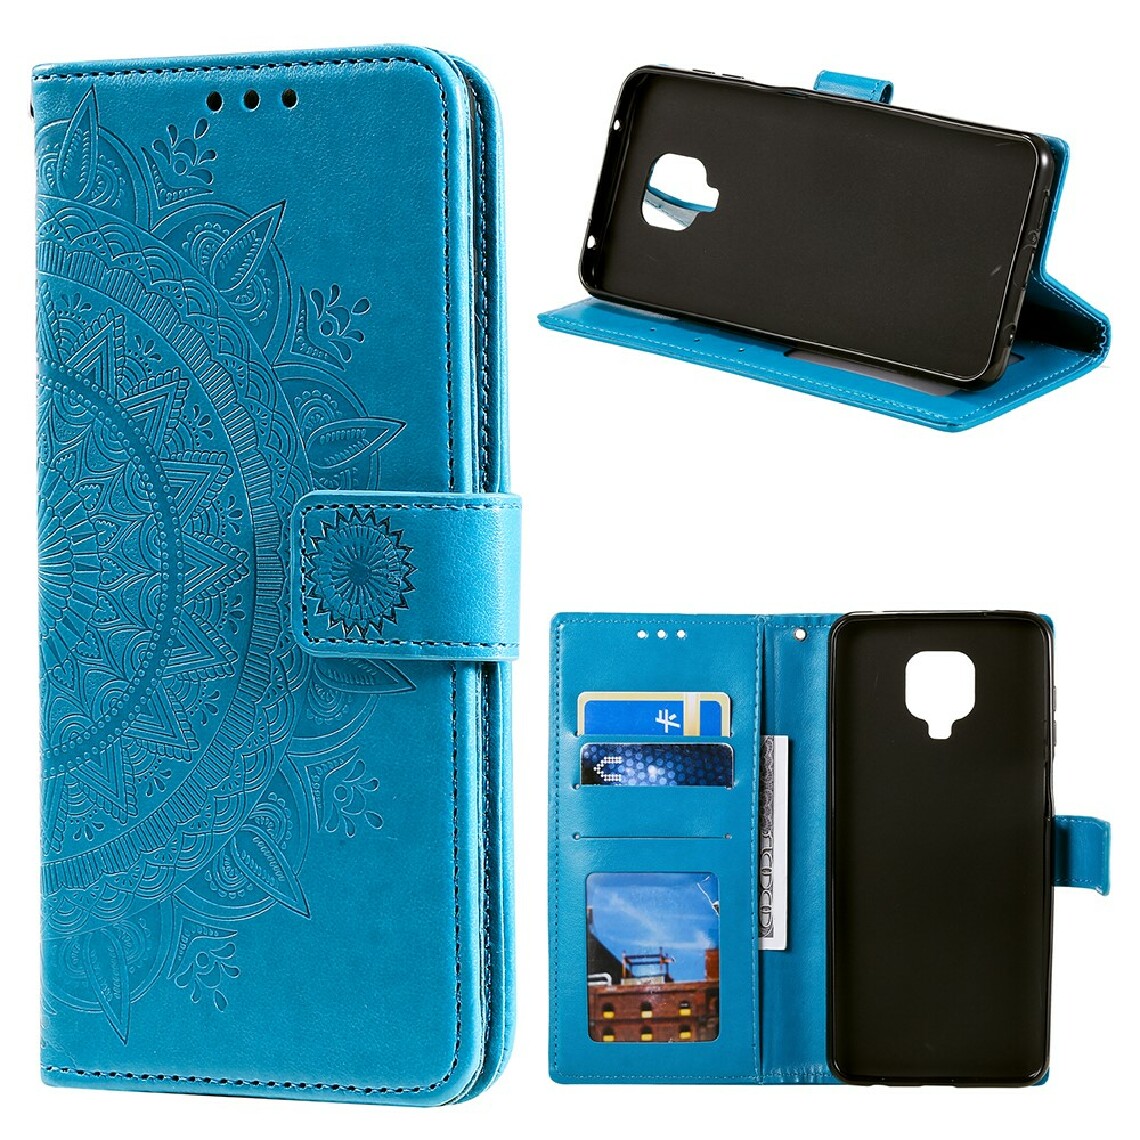 Other - Etui en PU impression coquille de fleur avec support bleu pour votre Motorola Moto G9 Play - Coque, étui smartphone